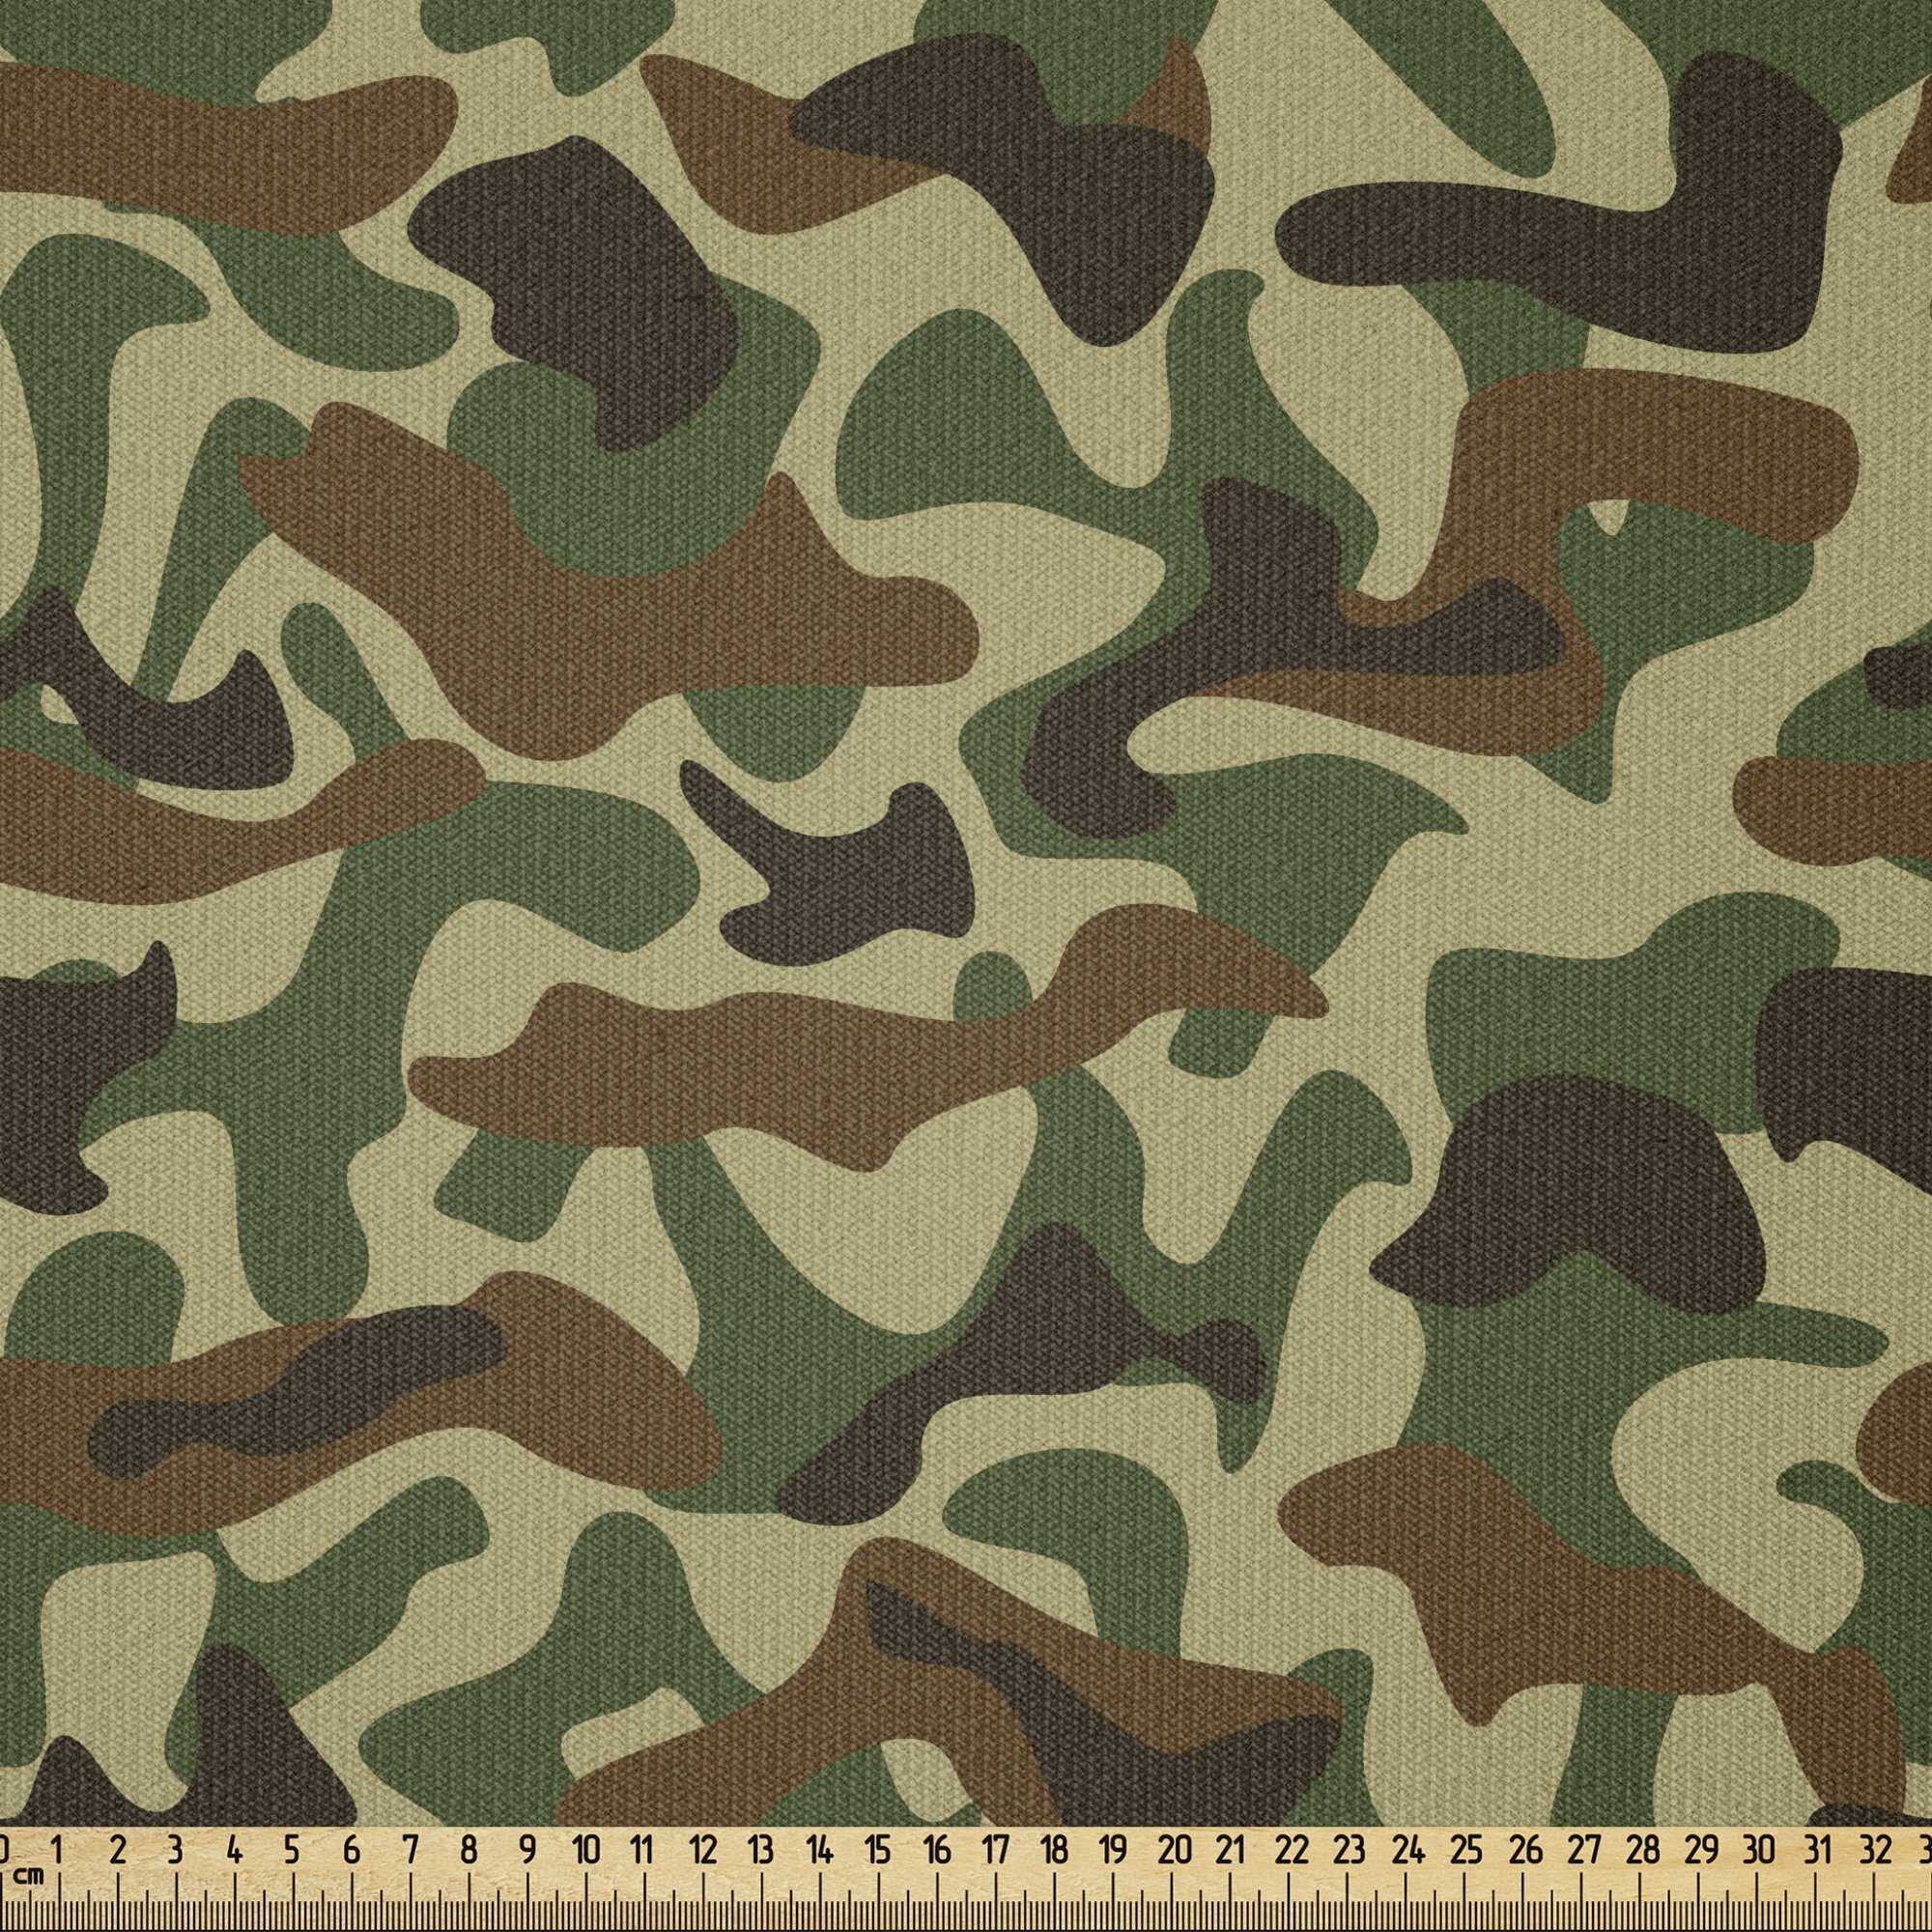 Porte-vues A5 couverture camouflage CE : 60 vues Couleur Camouflage Couleur  Camouflage